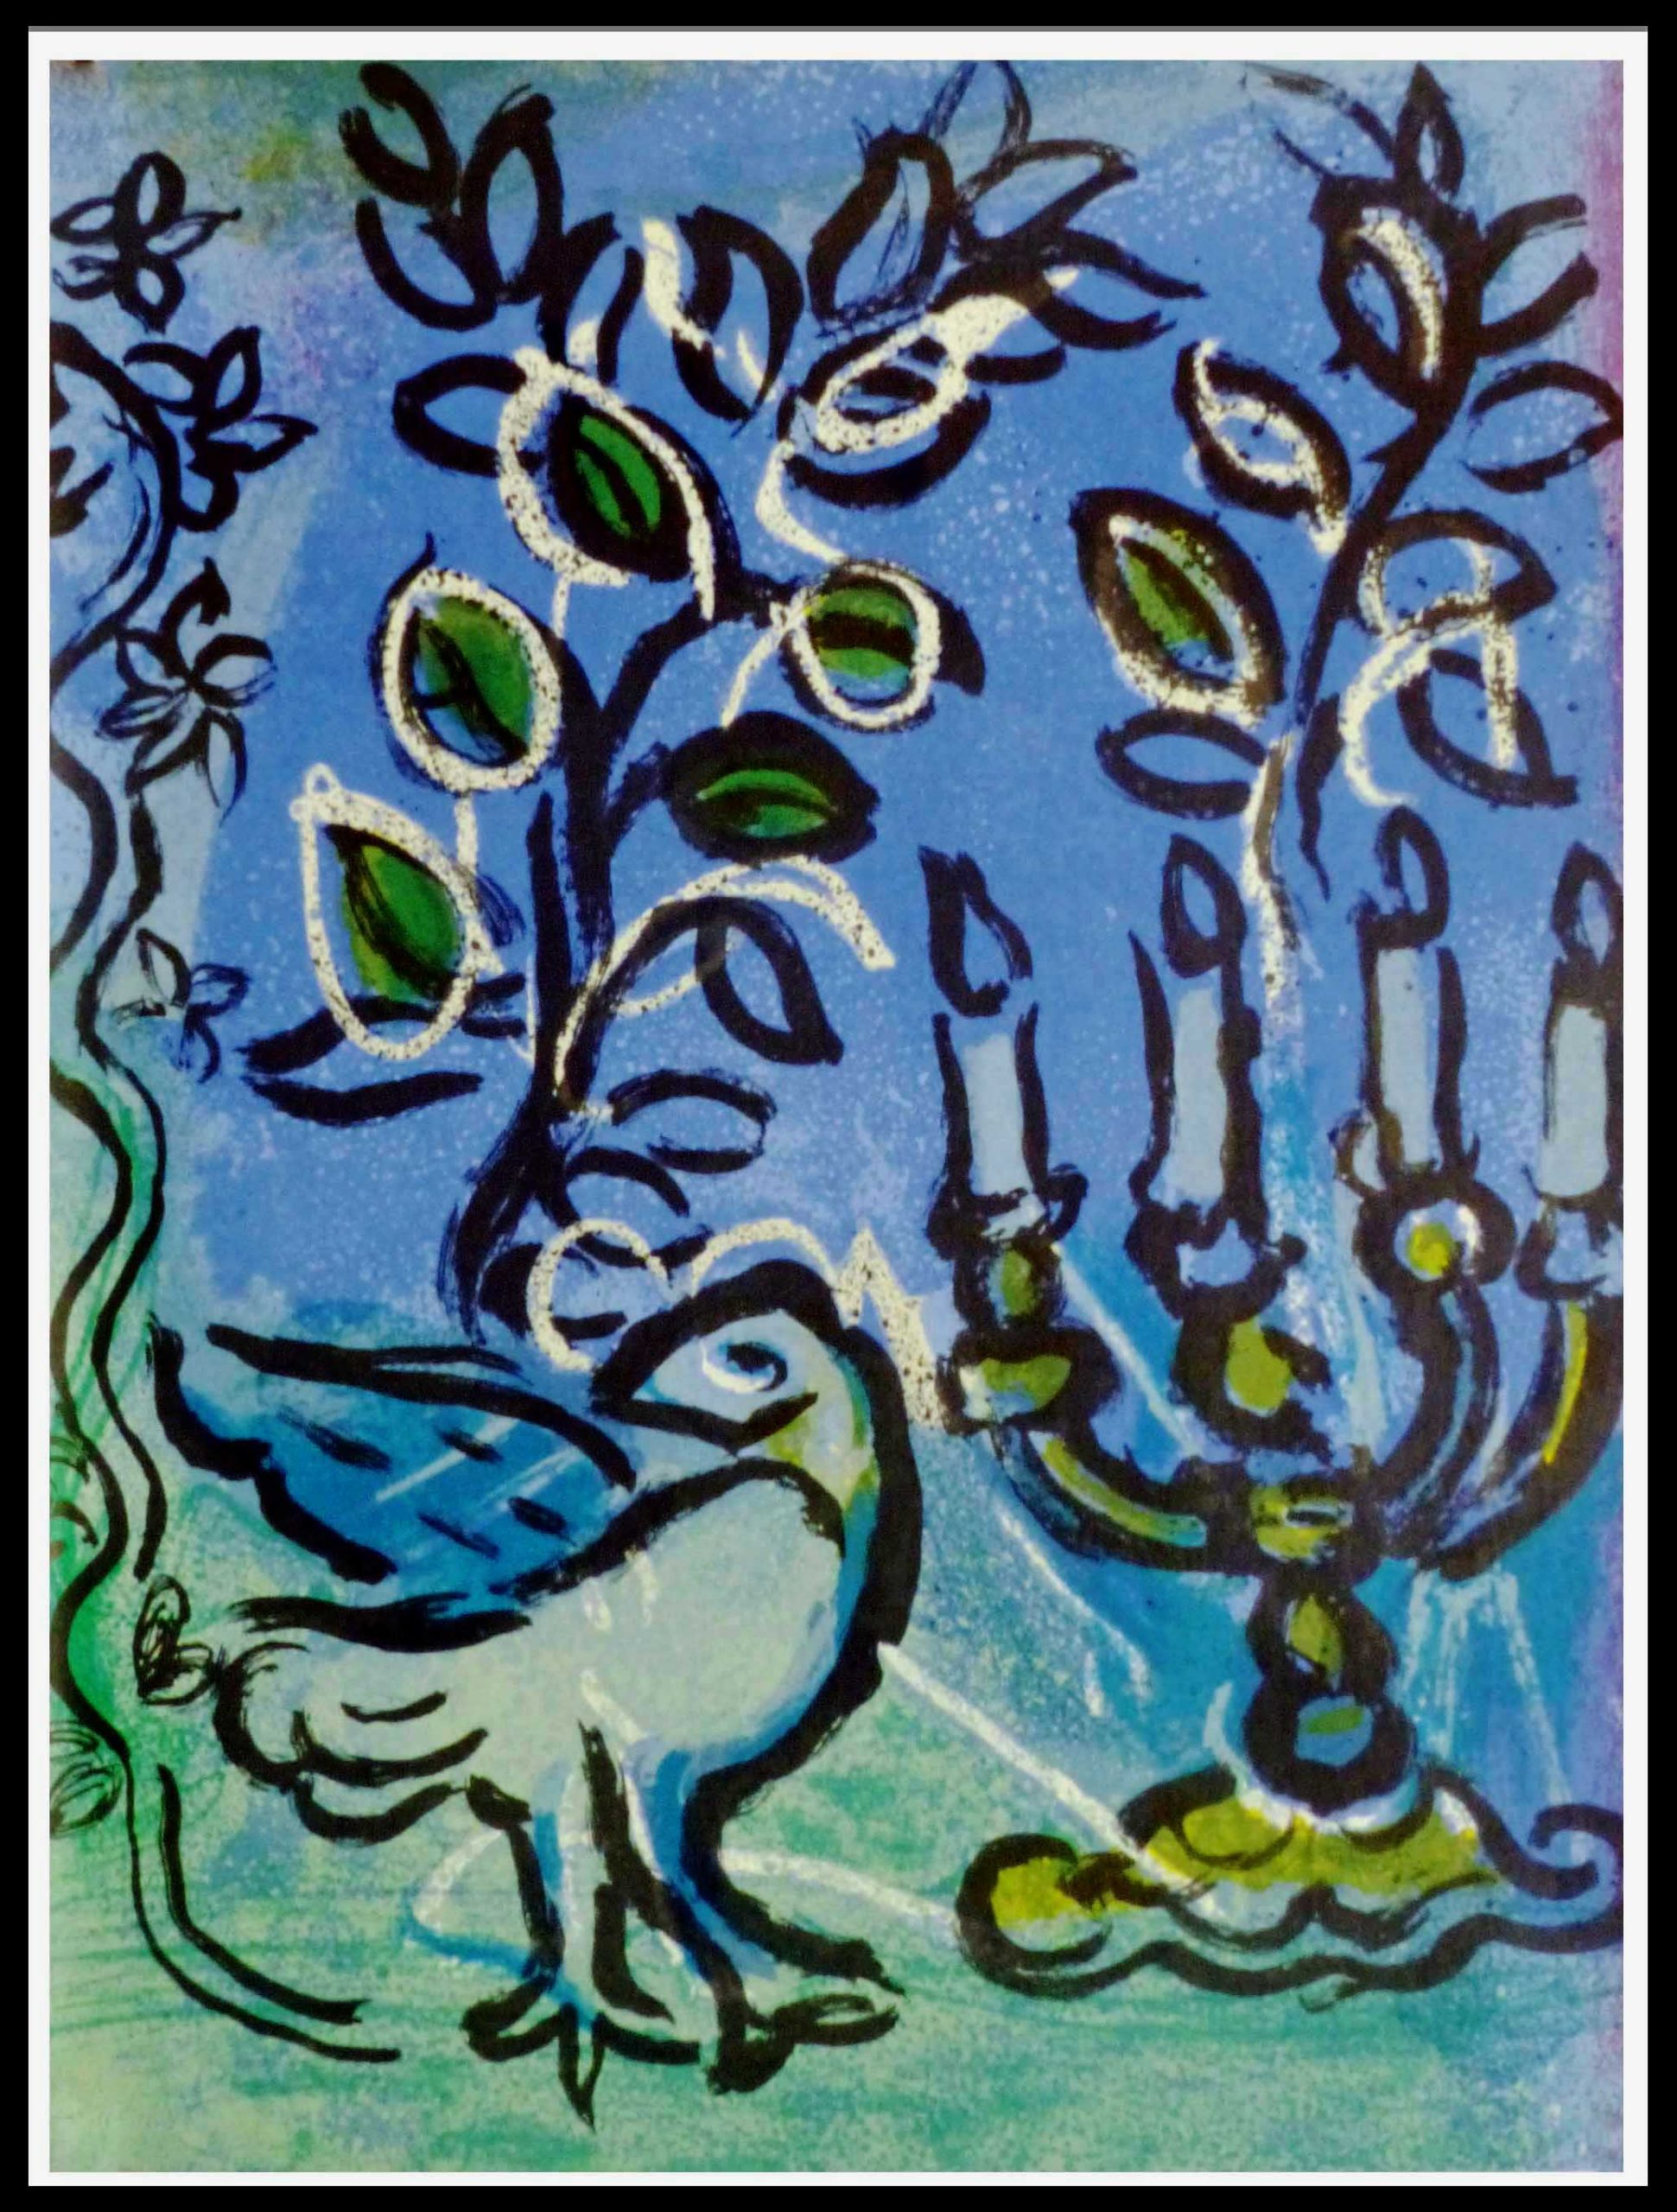 Vitraux de Jérusalem chandelier 32 x 24 cm condition A+ Lithographie originale Marc Chagall 1962 Imprimerie Mourlot non signée